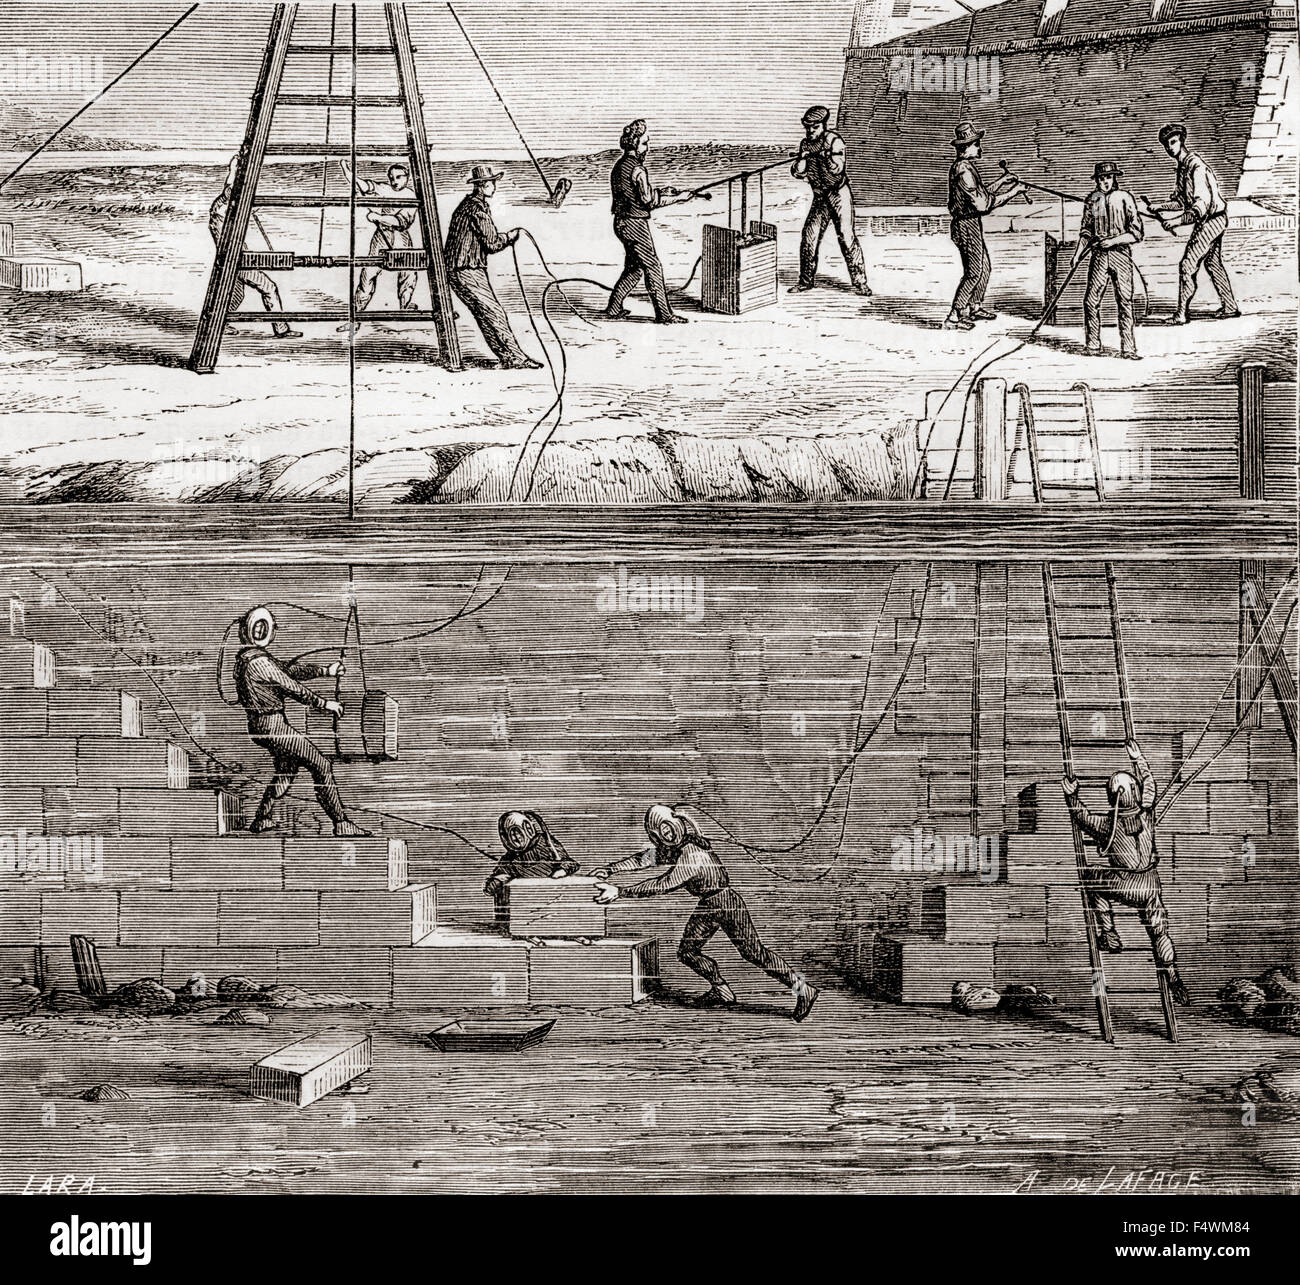 Los trabajadores en trajes de buceo trabajan en construcciones submarino en el siglo XIX. Foto de stock